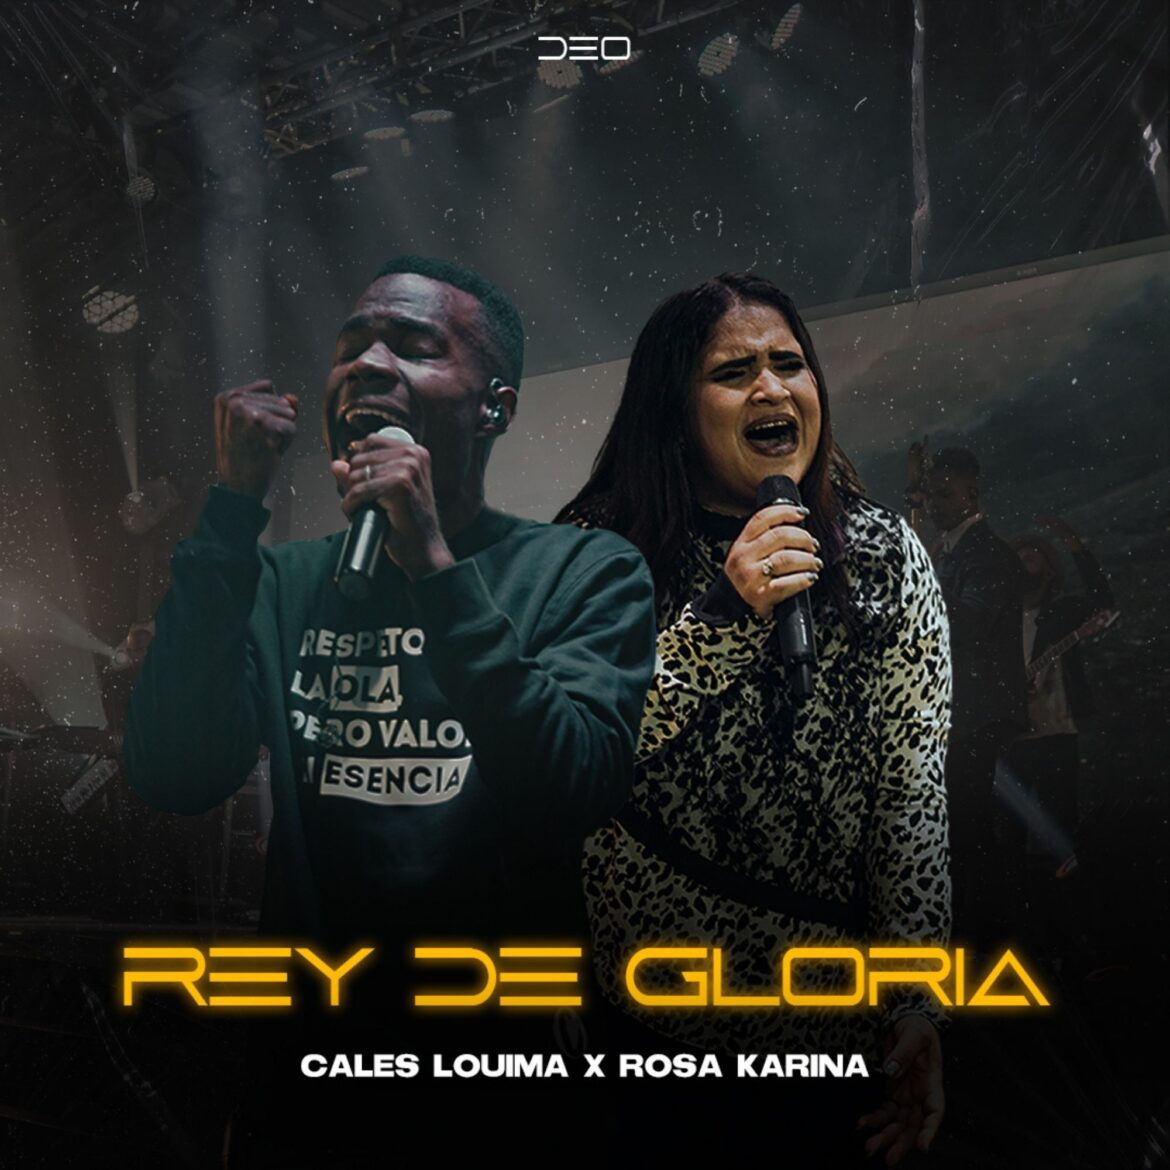 El cantante Cales Louima presenta el primer sencillo titulado “Rey De Gloria” de su nuevo álbum “Diseño, Existencia y Origen”